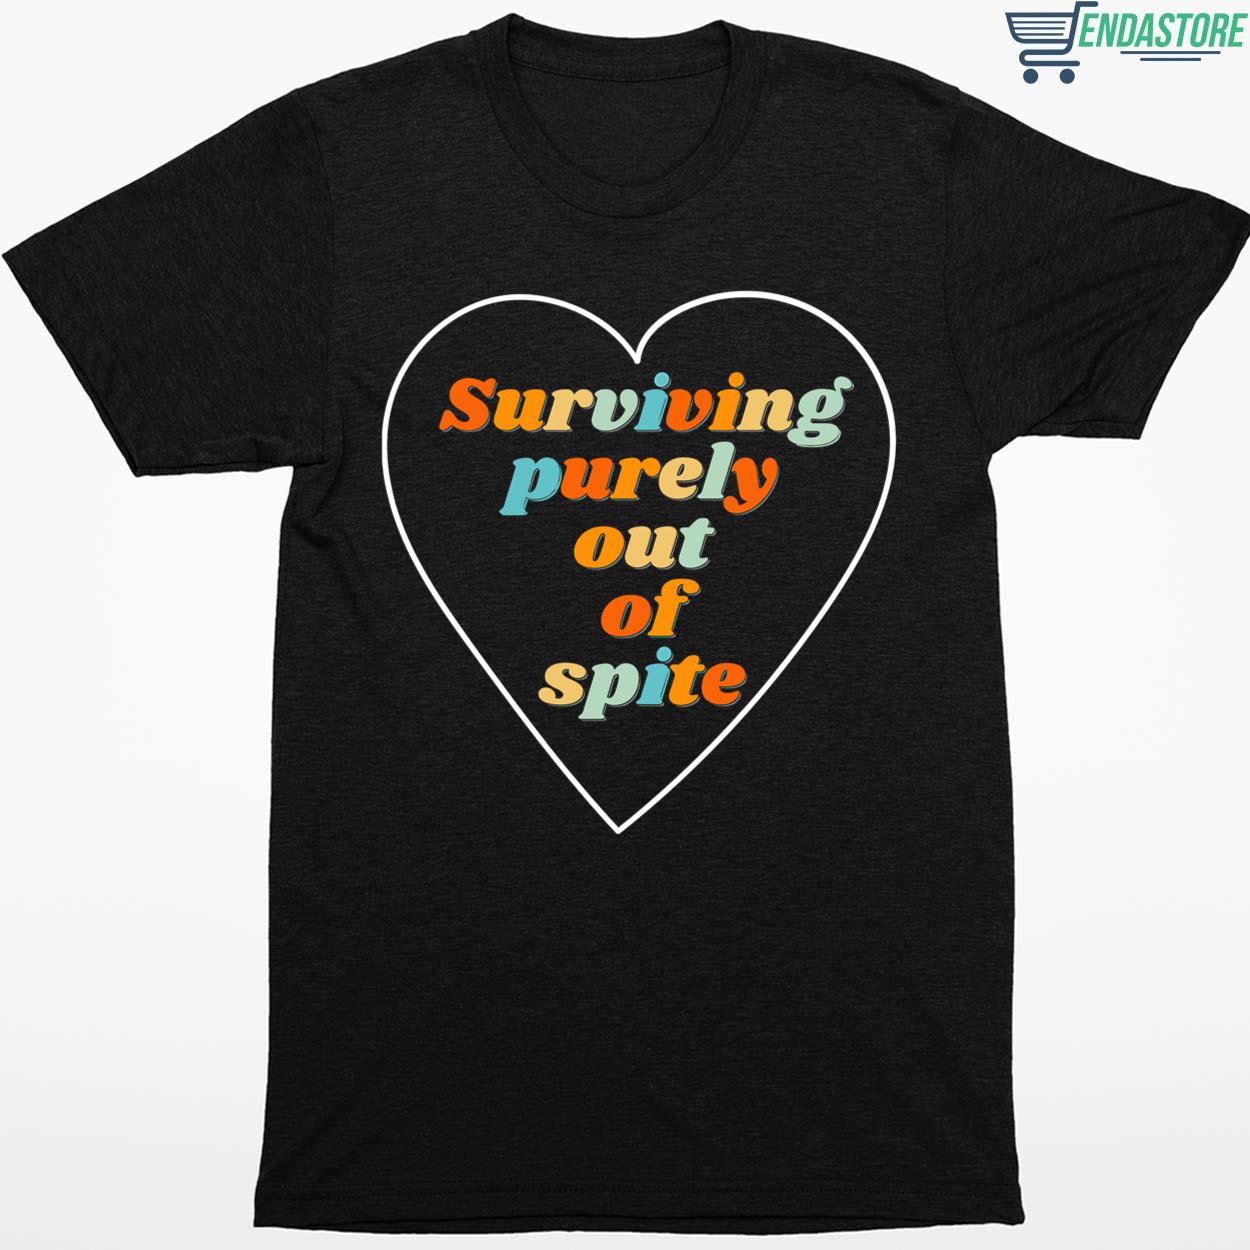 Surviving Purely Out Of Spite Shirt - Endastore.com